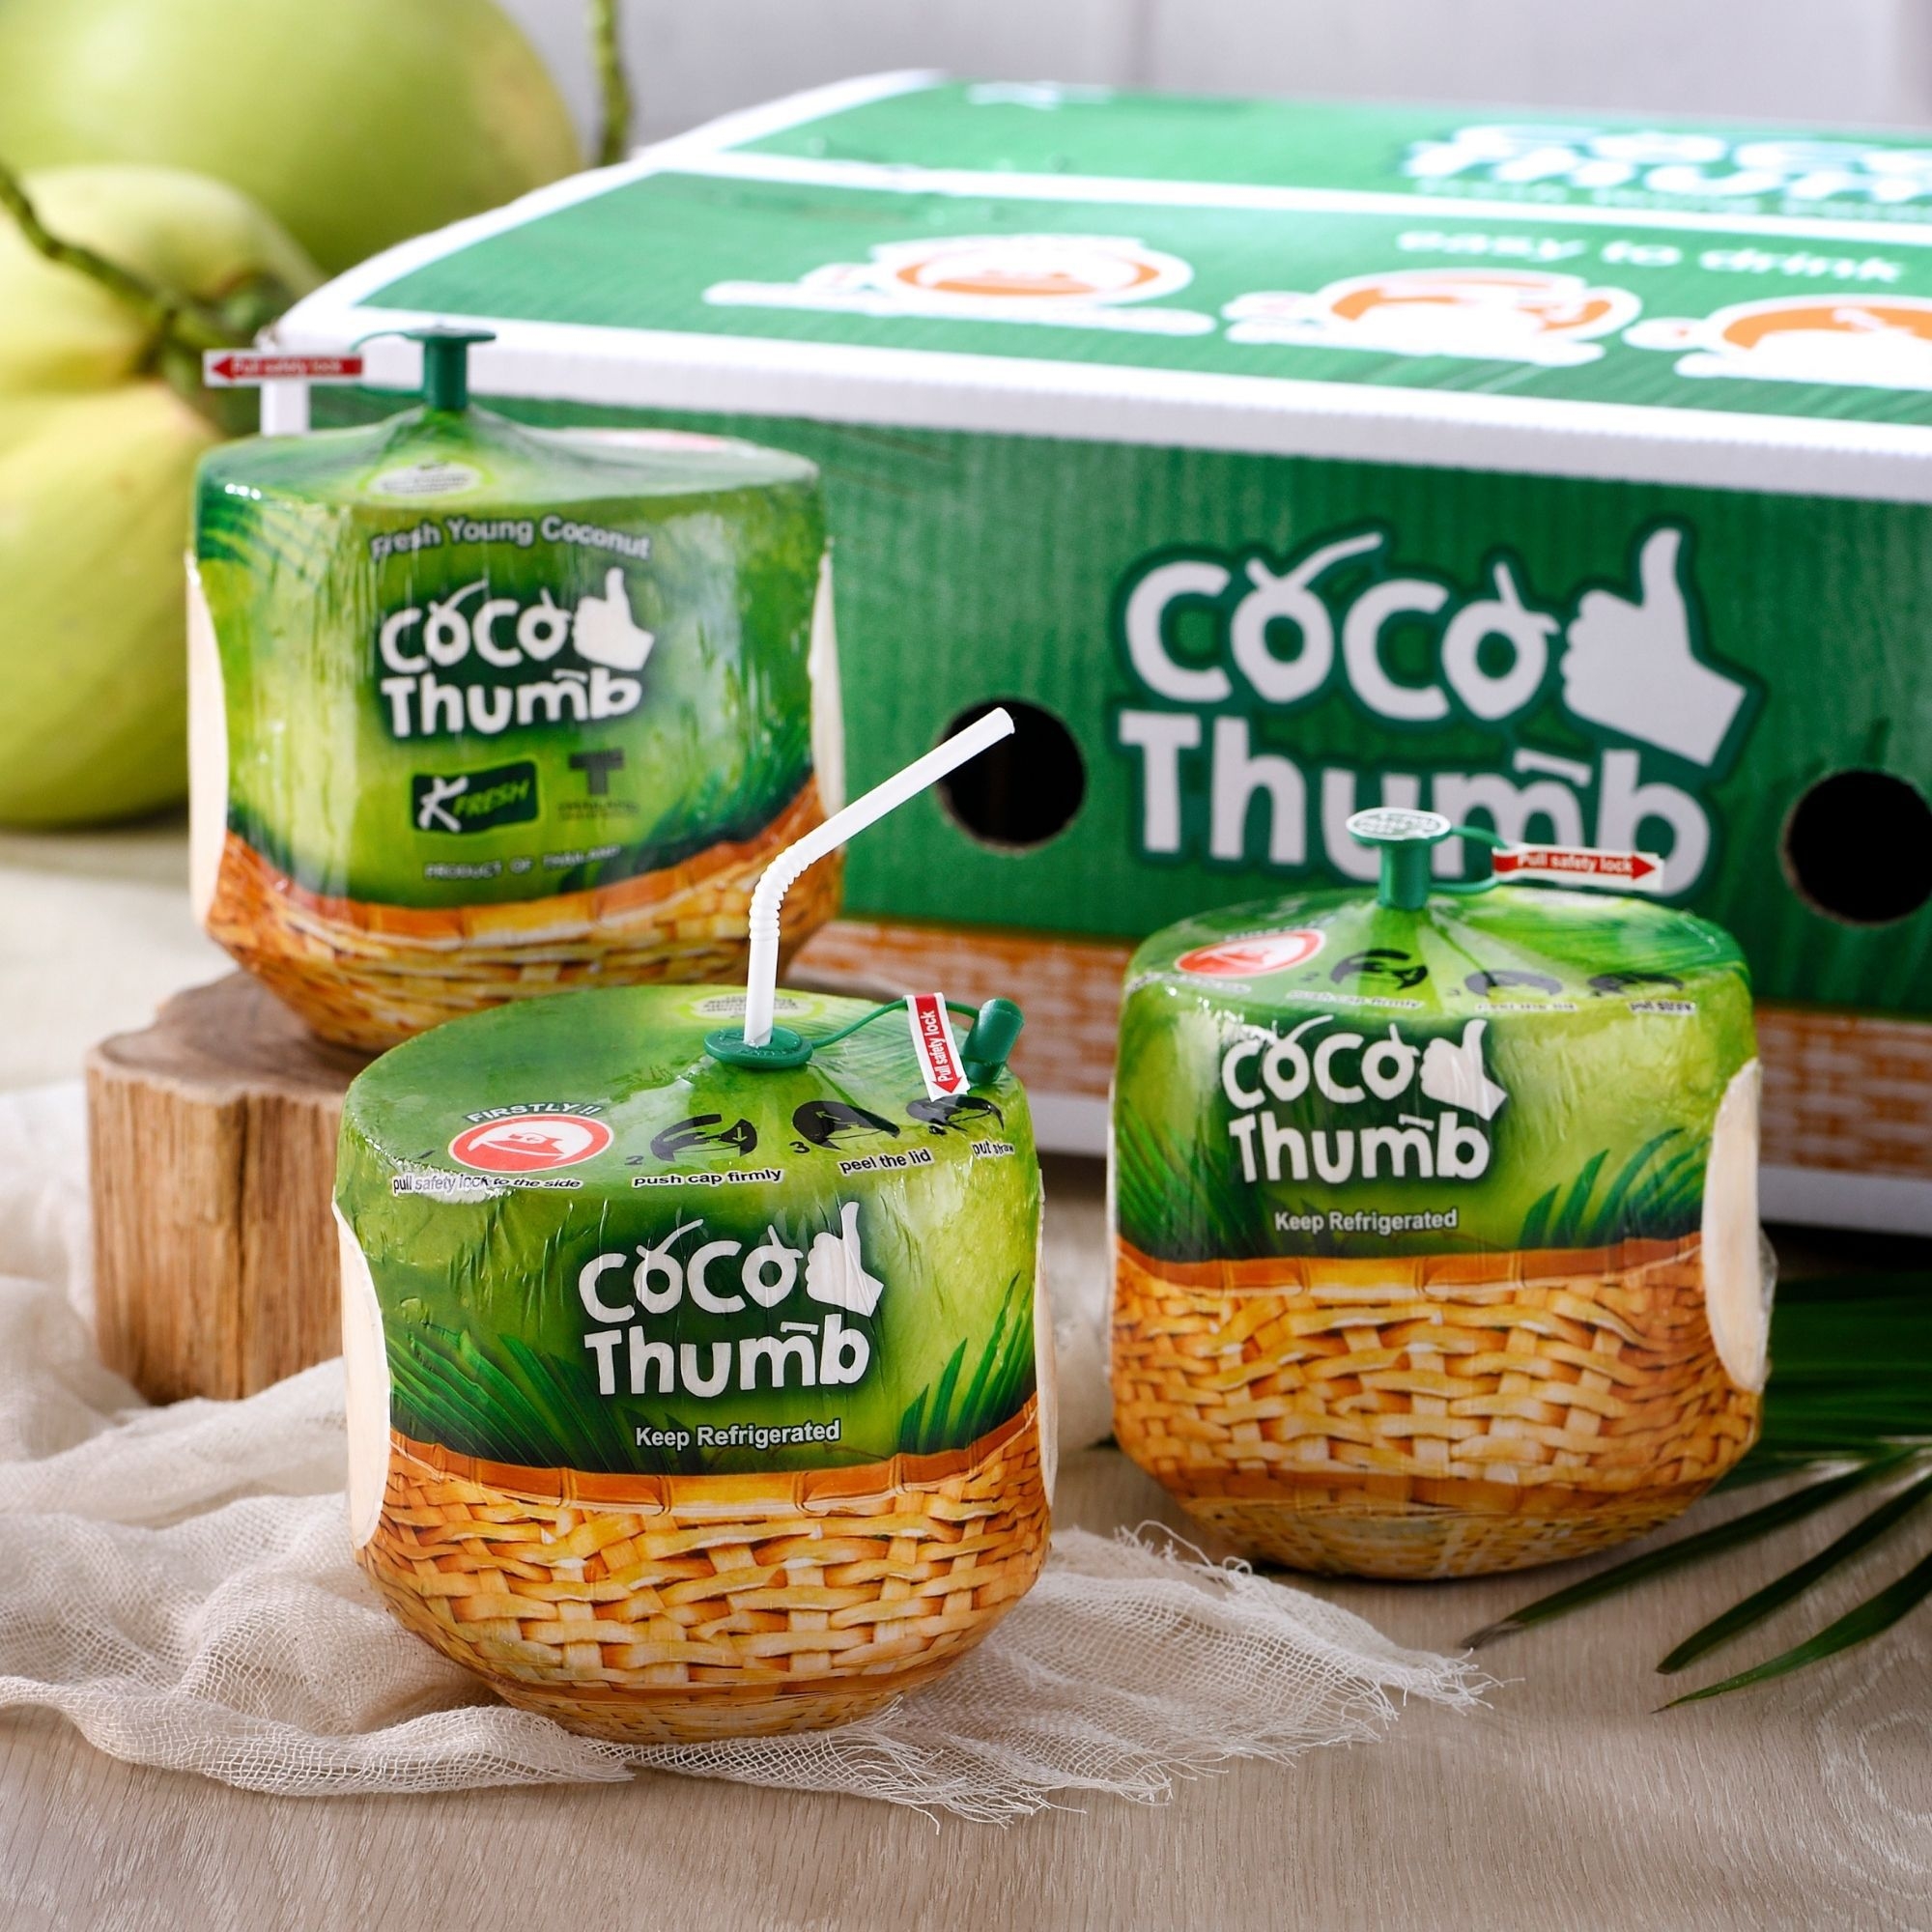 รูปภาพเพิ่มเติมเกี่ยวกับ กล่อง 4 ลูก: โคโค ทัมบ์ Coco Thumb มะพร้าวน้ำหอม พร้อมดื่ม มะพร้าวน้ำหอมลูกสดๆ พร้อมดื่ม